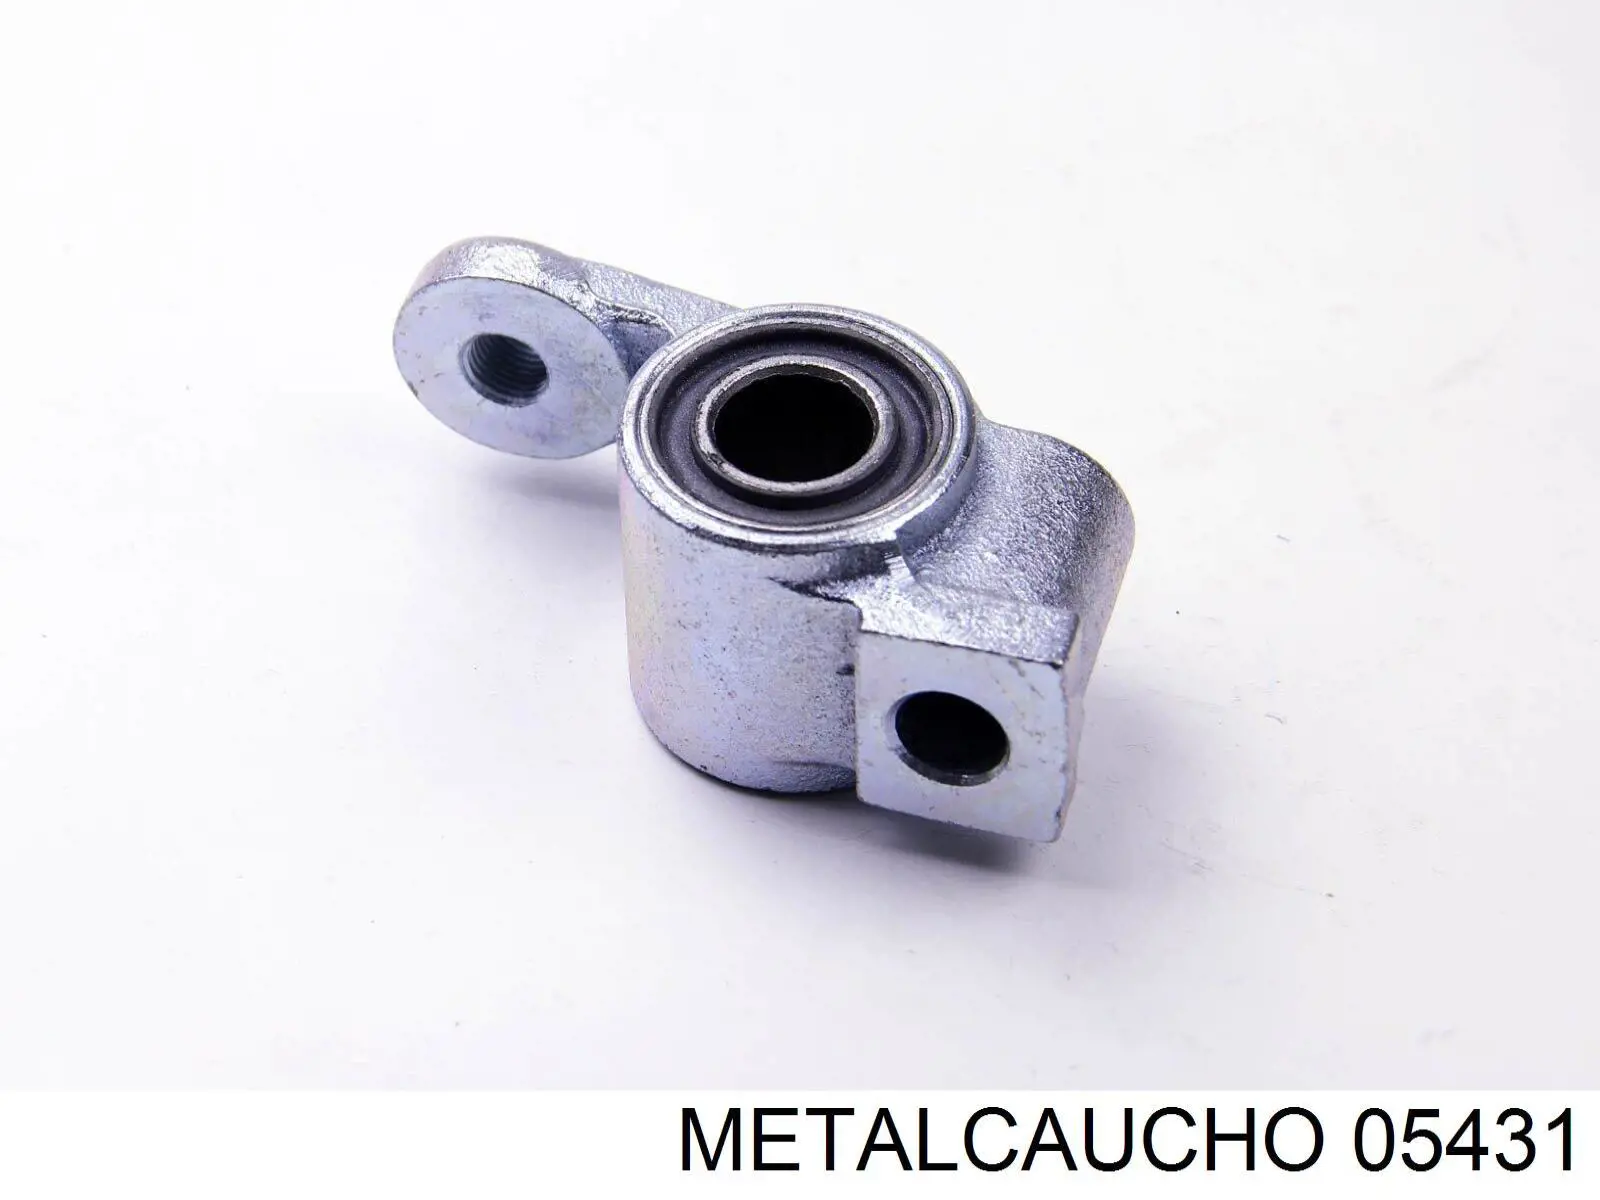 05431 Metalcaucho silentblock de suspensión delantero inferior